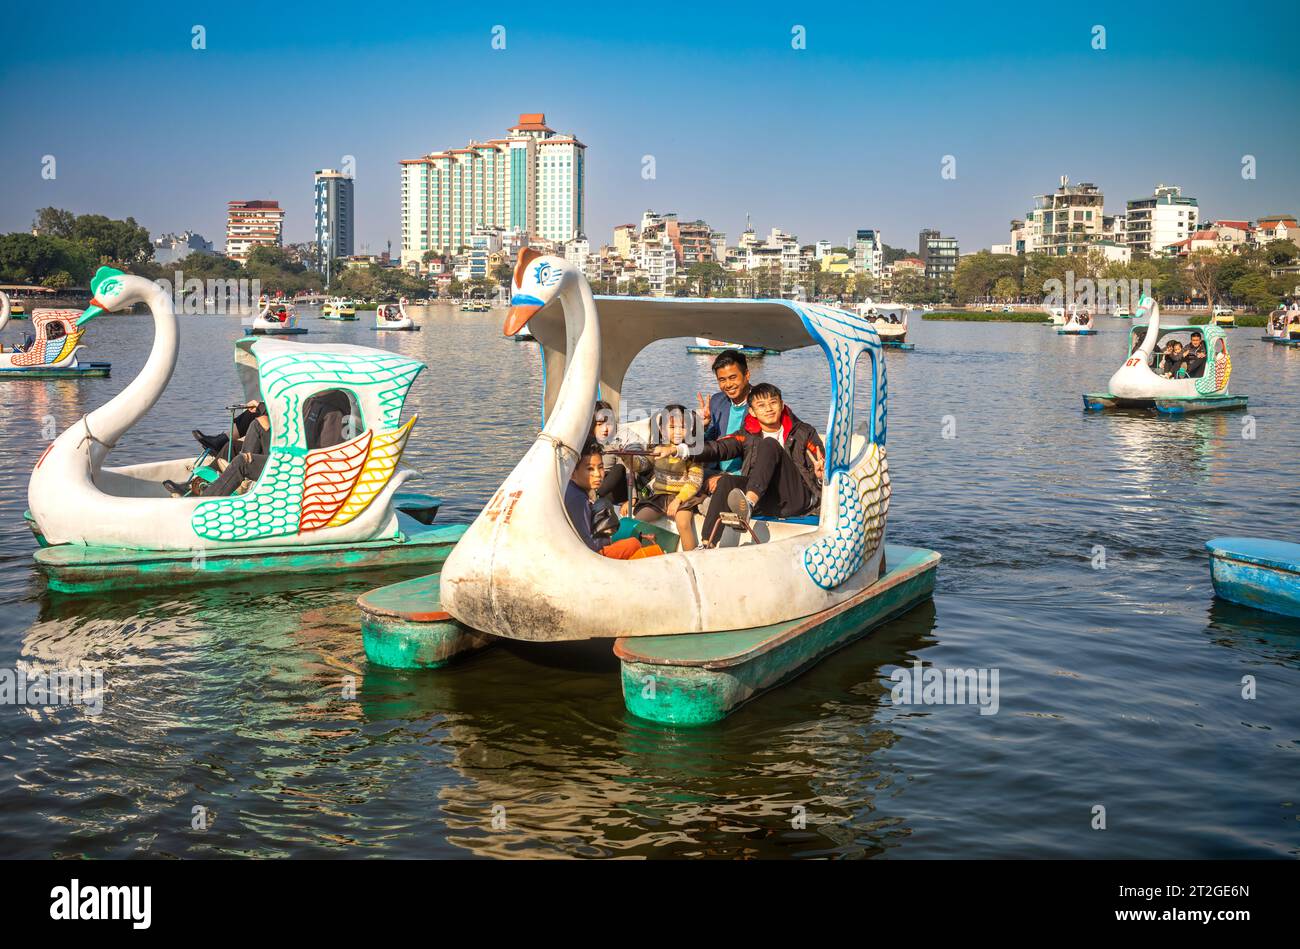 Ein vietnamesischer Vater mit vier kleinen Kindern auf einem schwanenförmigen Tretboot auf dem Truc Bach See, Hanoi, Vietnam Stockfoto